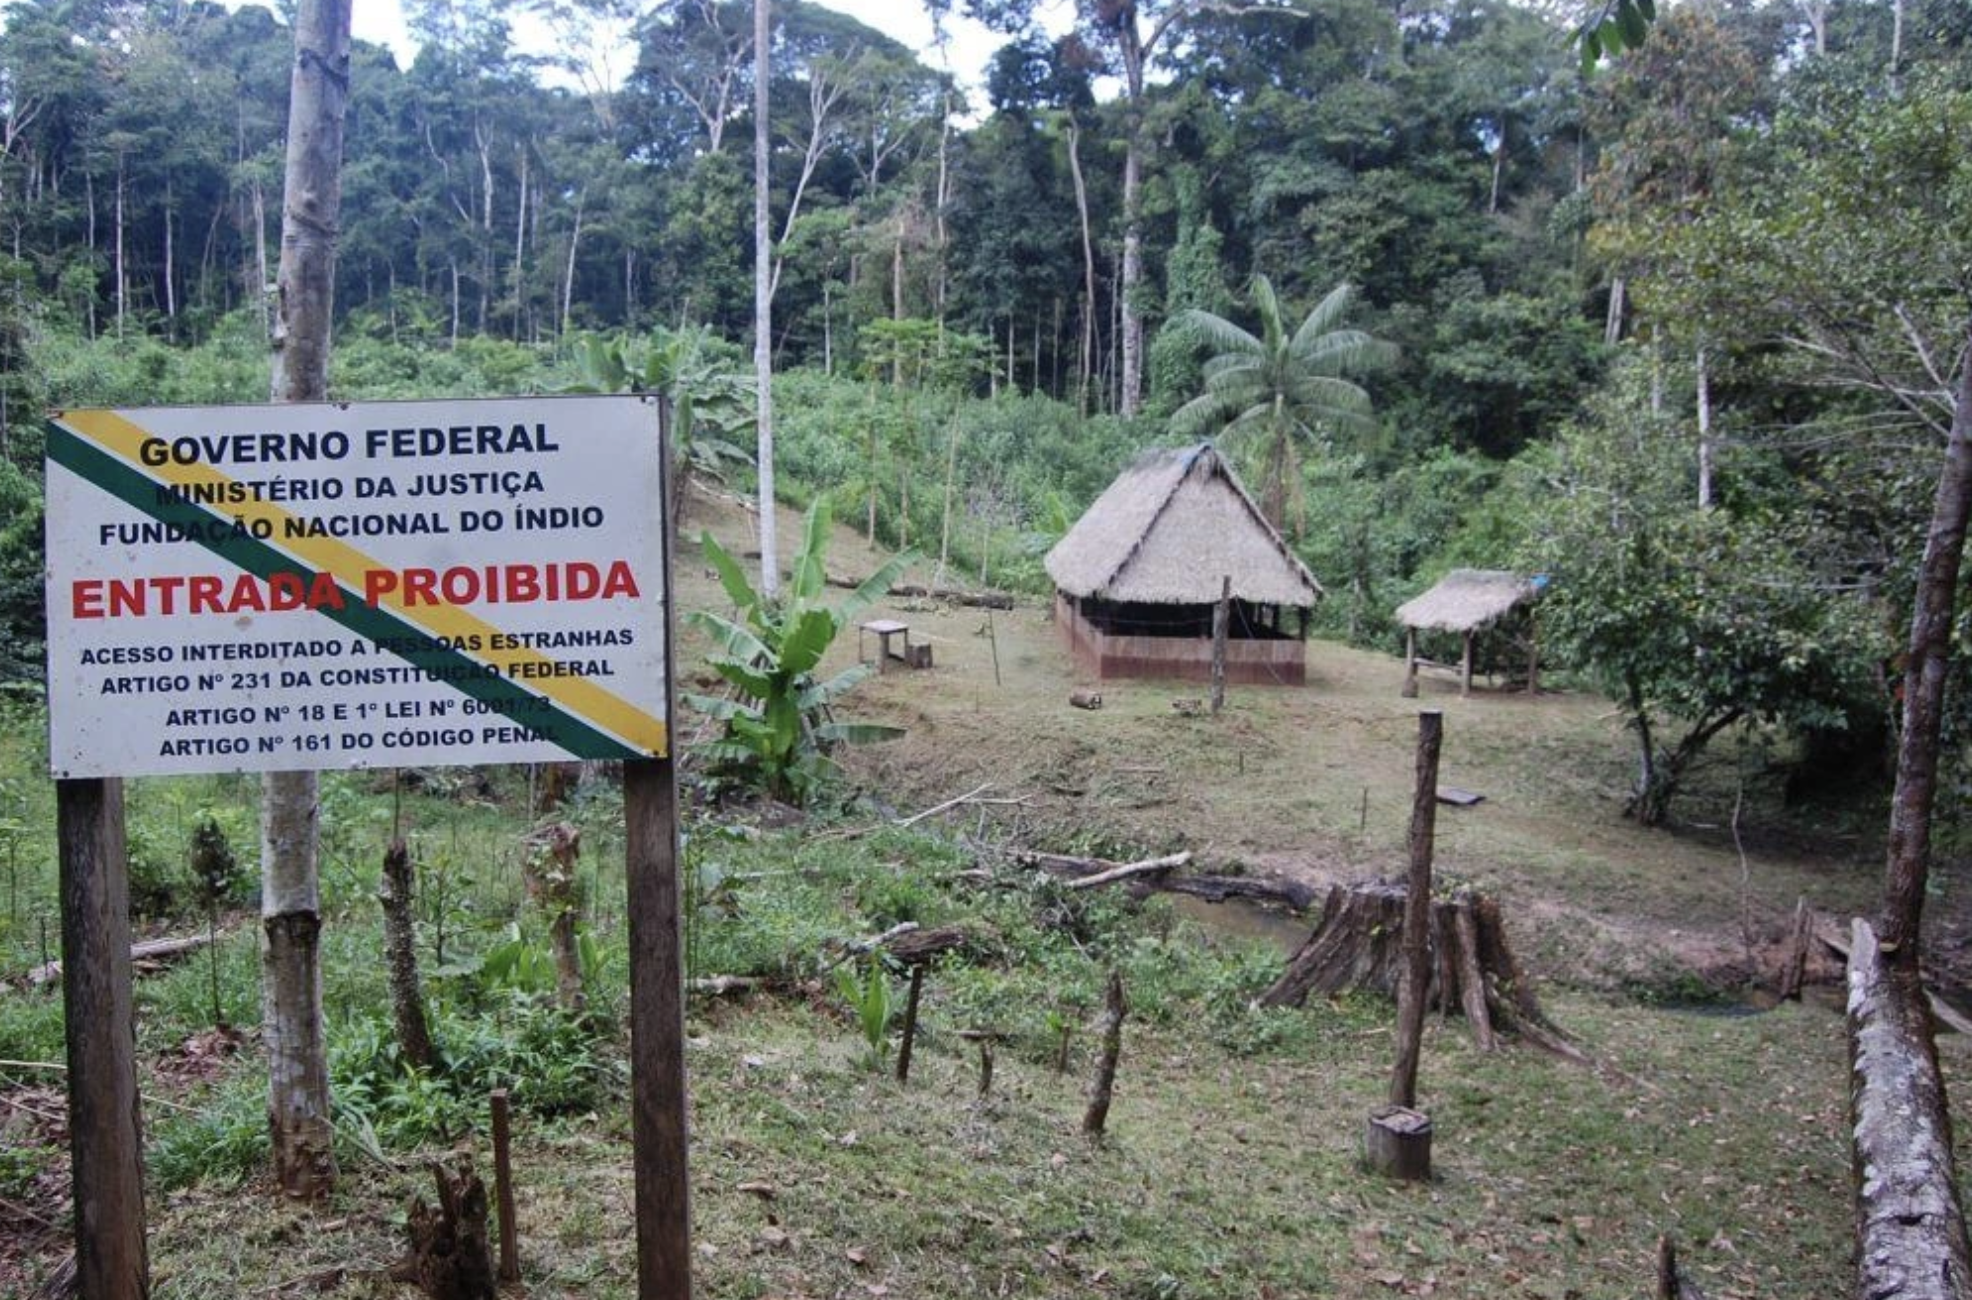 警告牌上告知外人不要进入巴西西部偏远的原住民部落保护区。